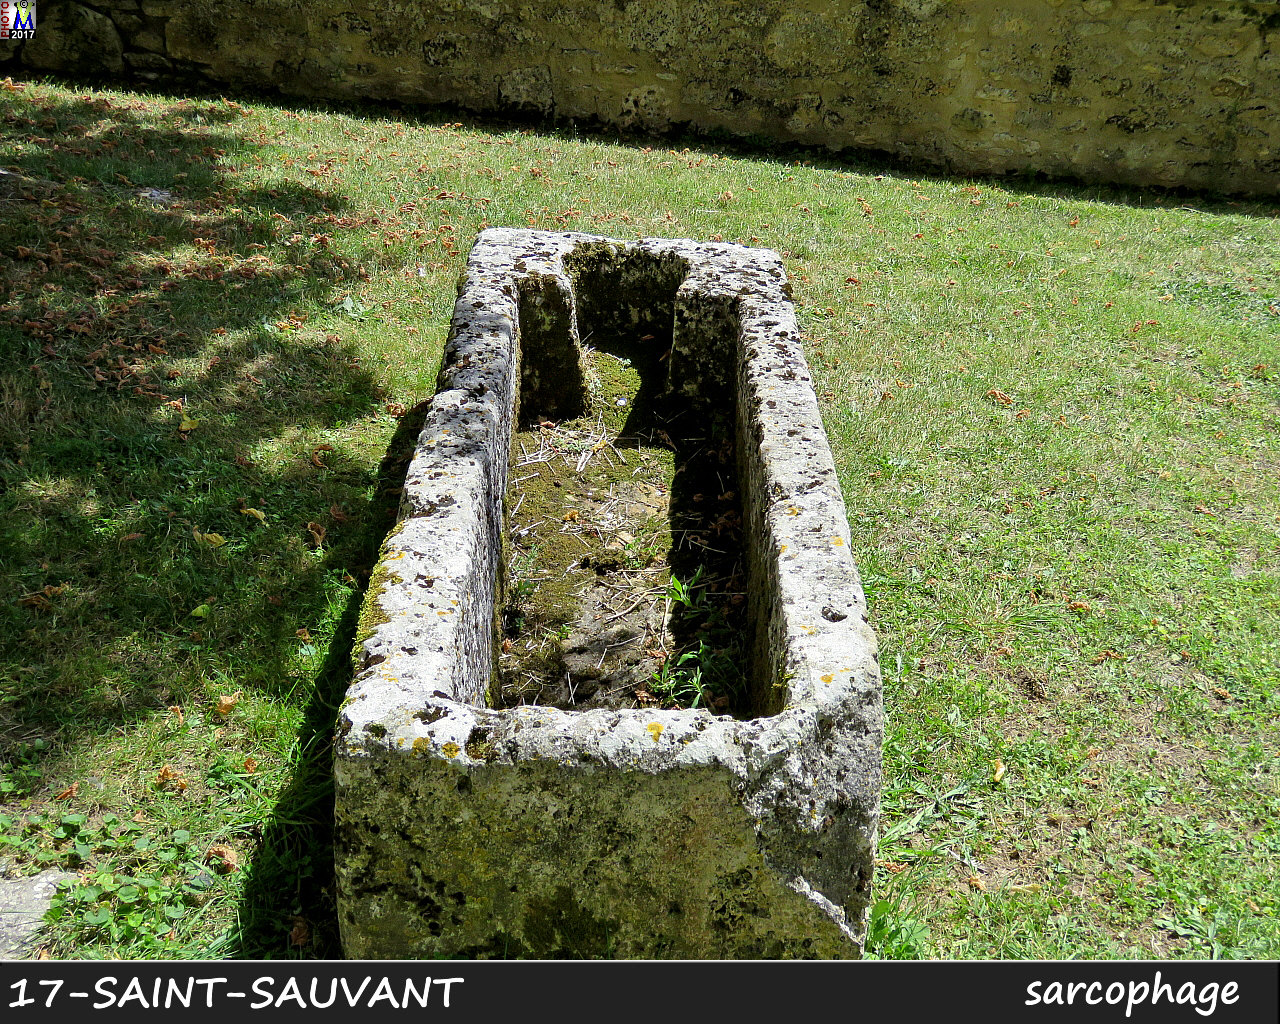 17StSAUVANT_sarcophage_1004.jpg